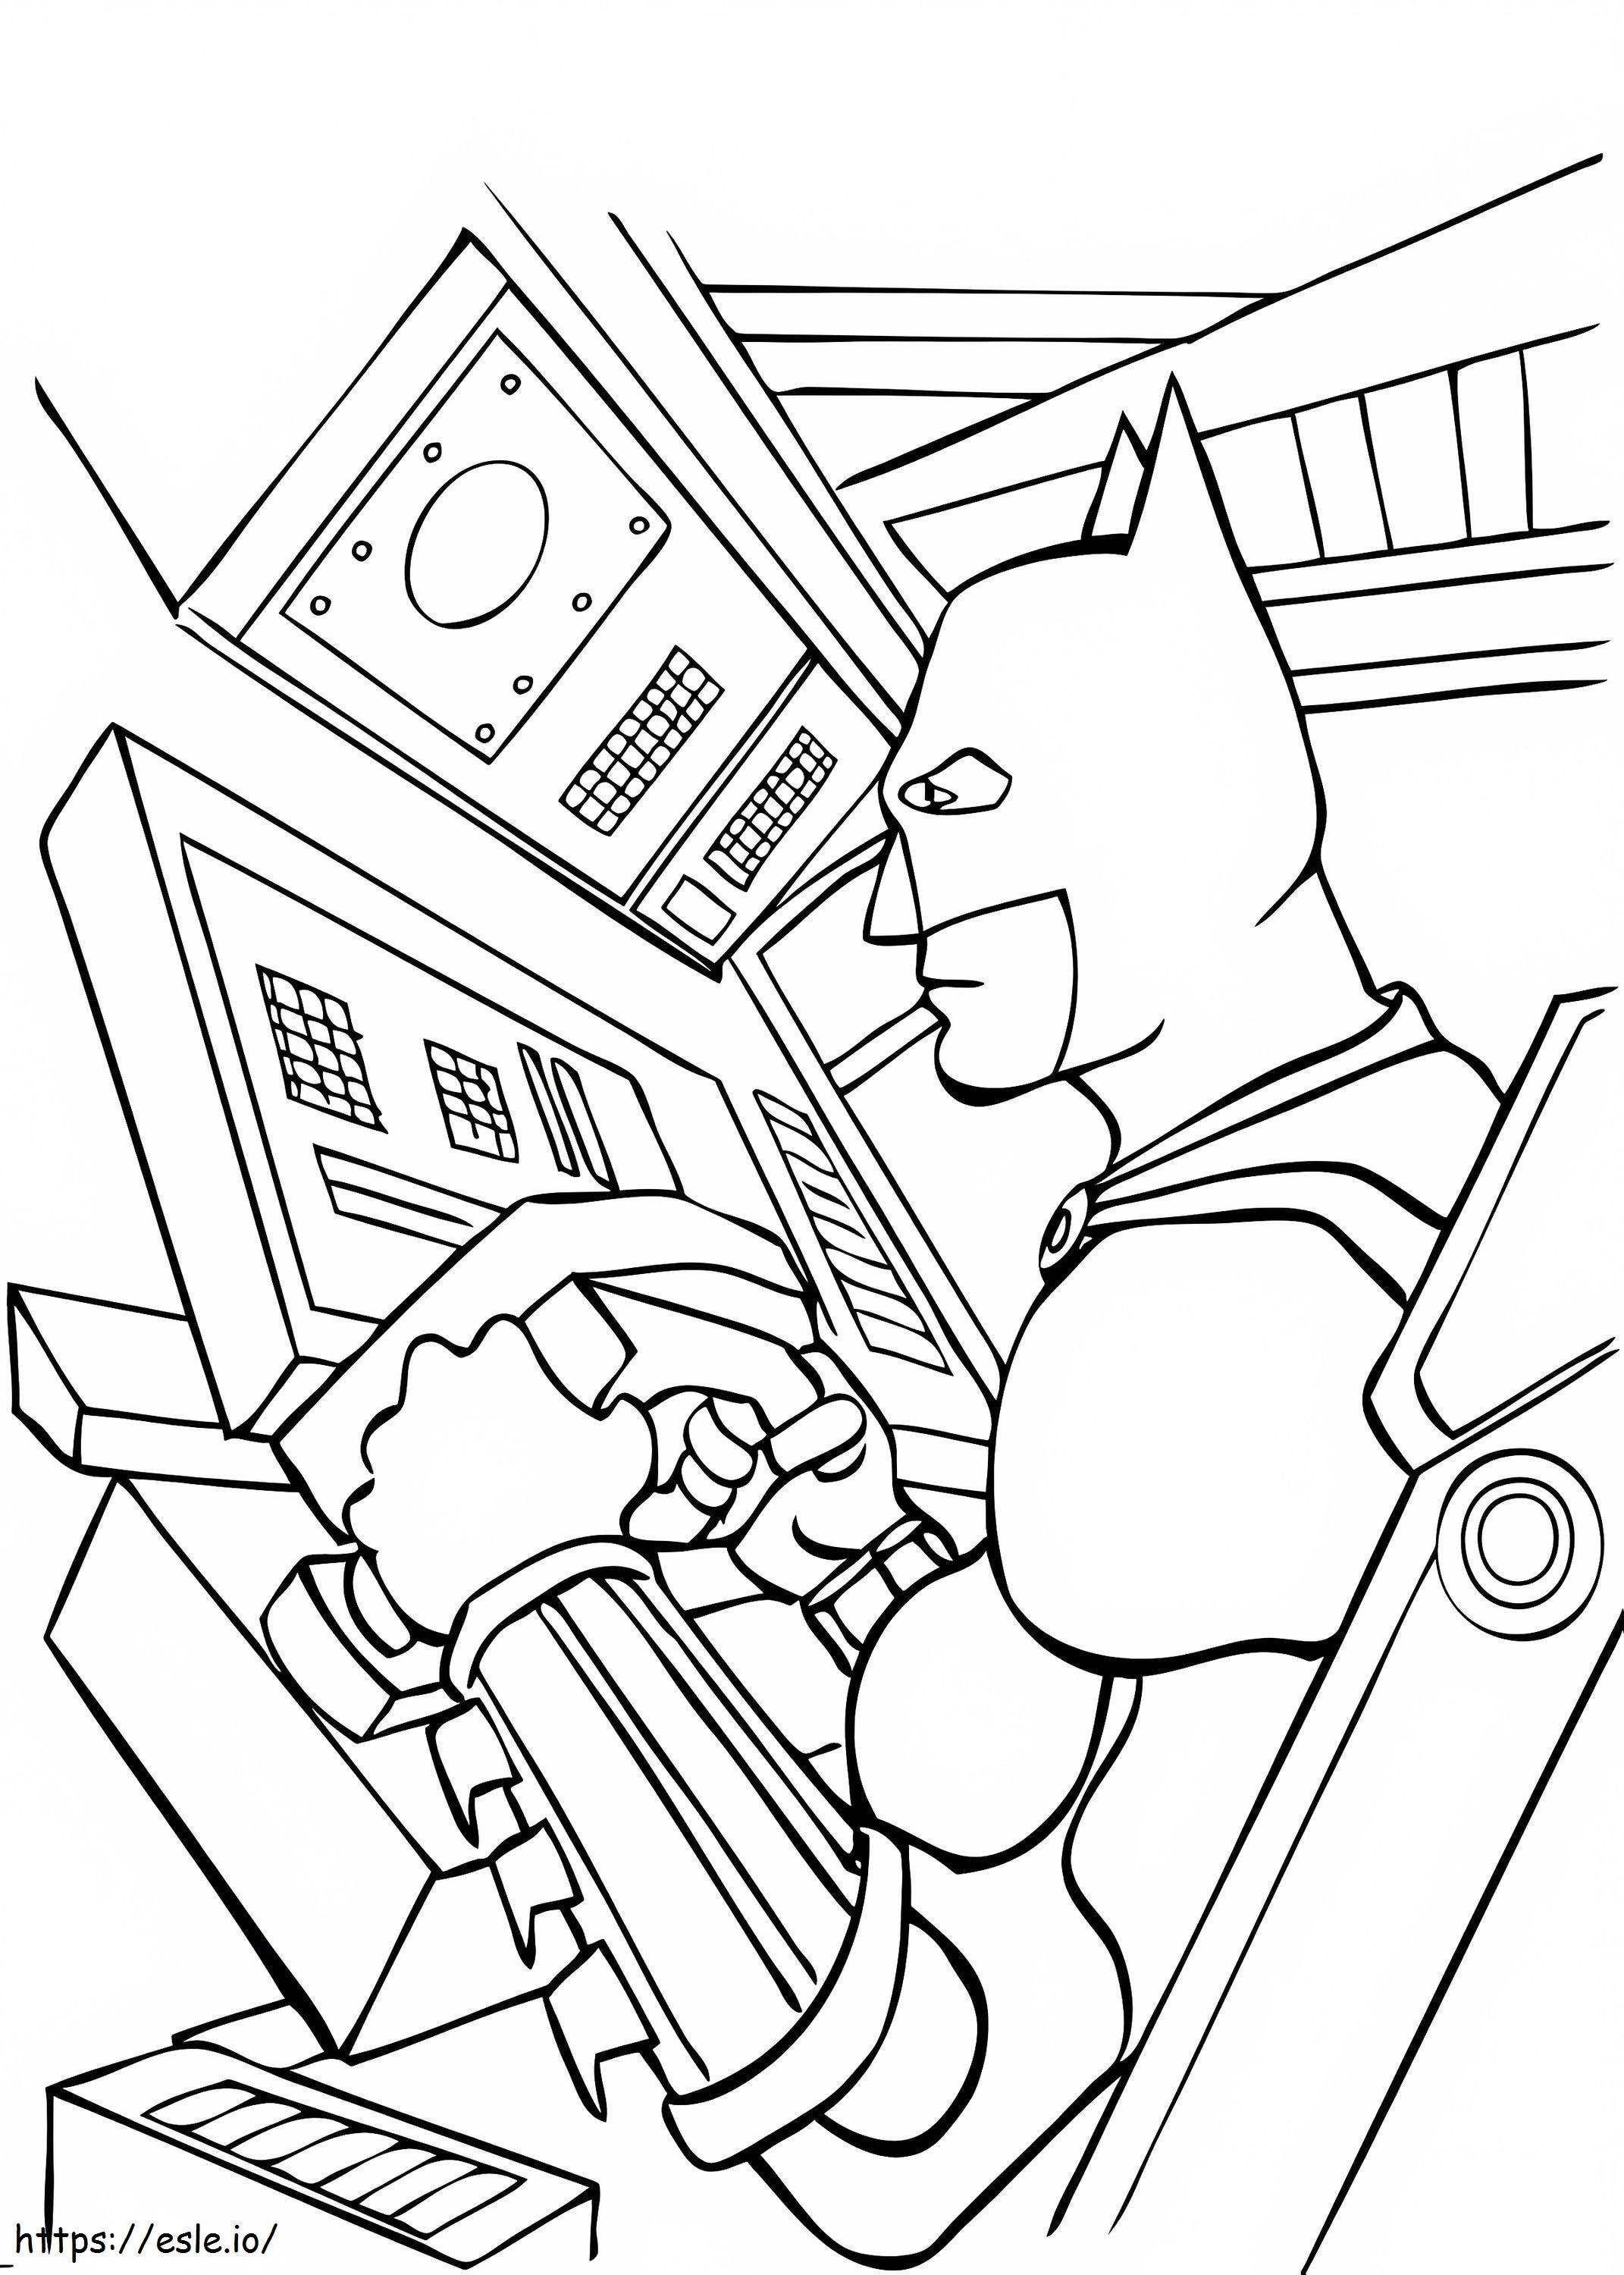 Coloriage Images gratuites de Batman à imprimer dessin